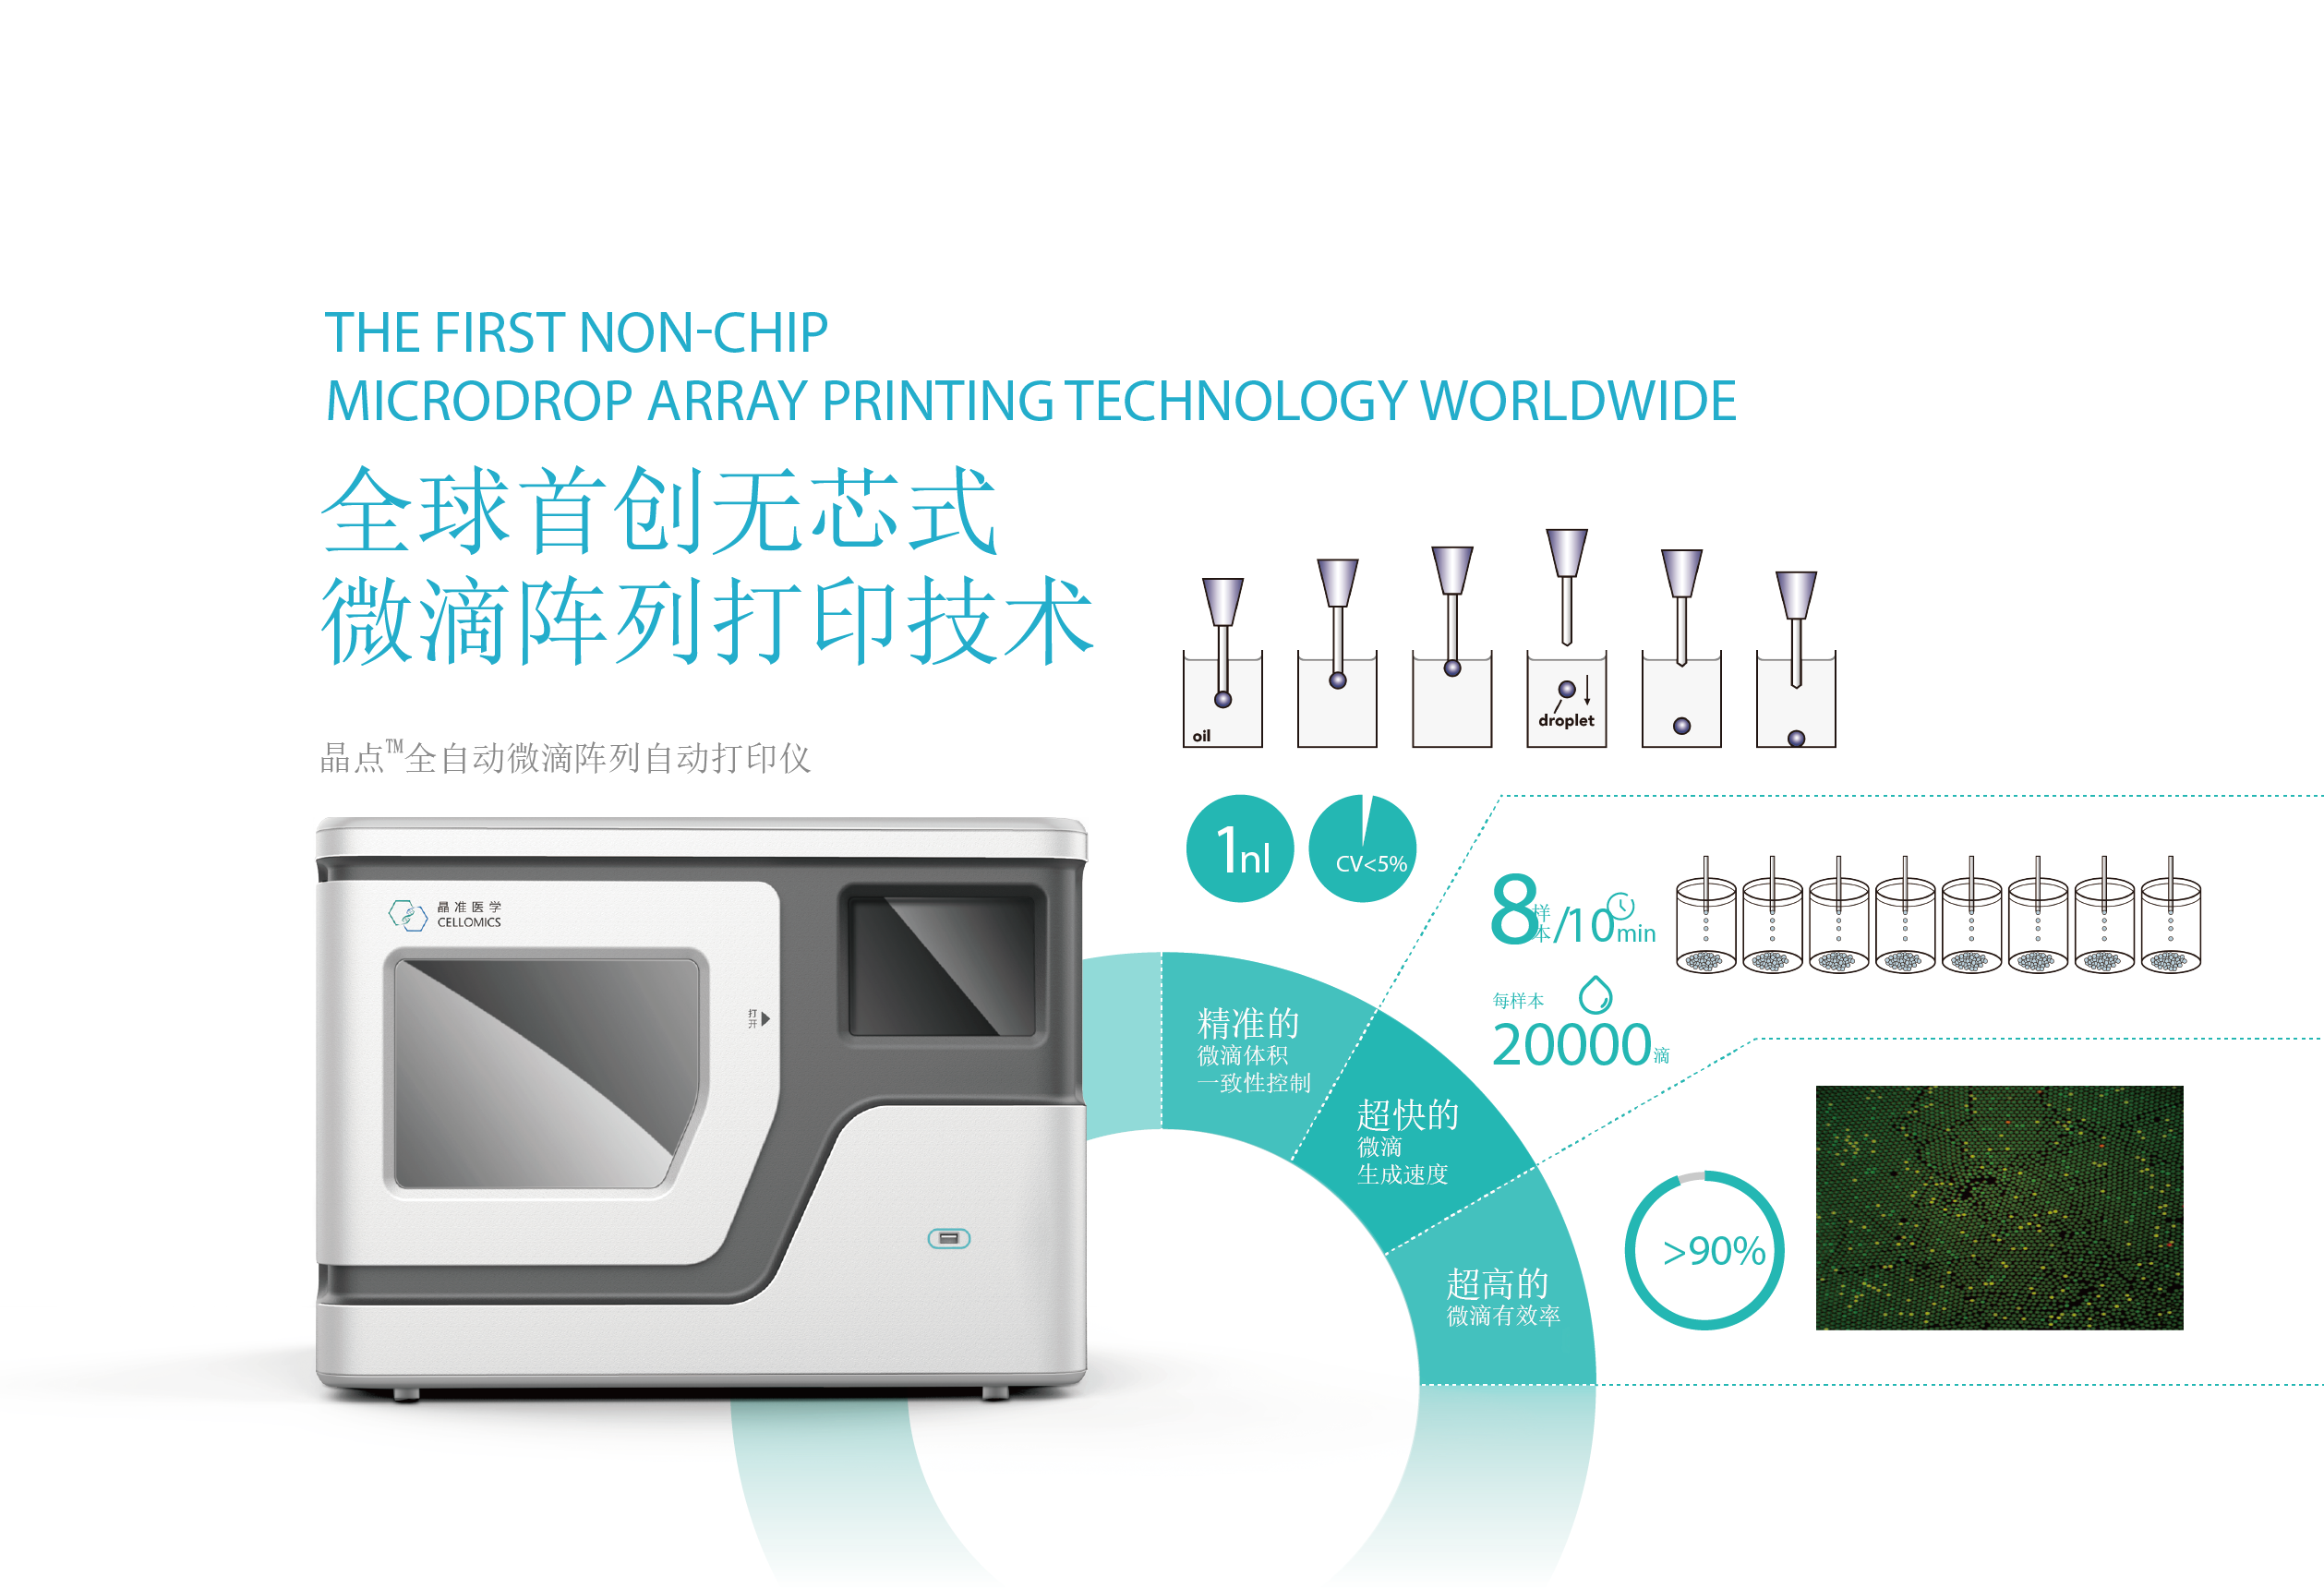 全球首创无芯片微滴陈列打印技术，精准、快速、高效、低成本。